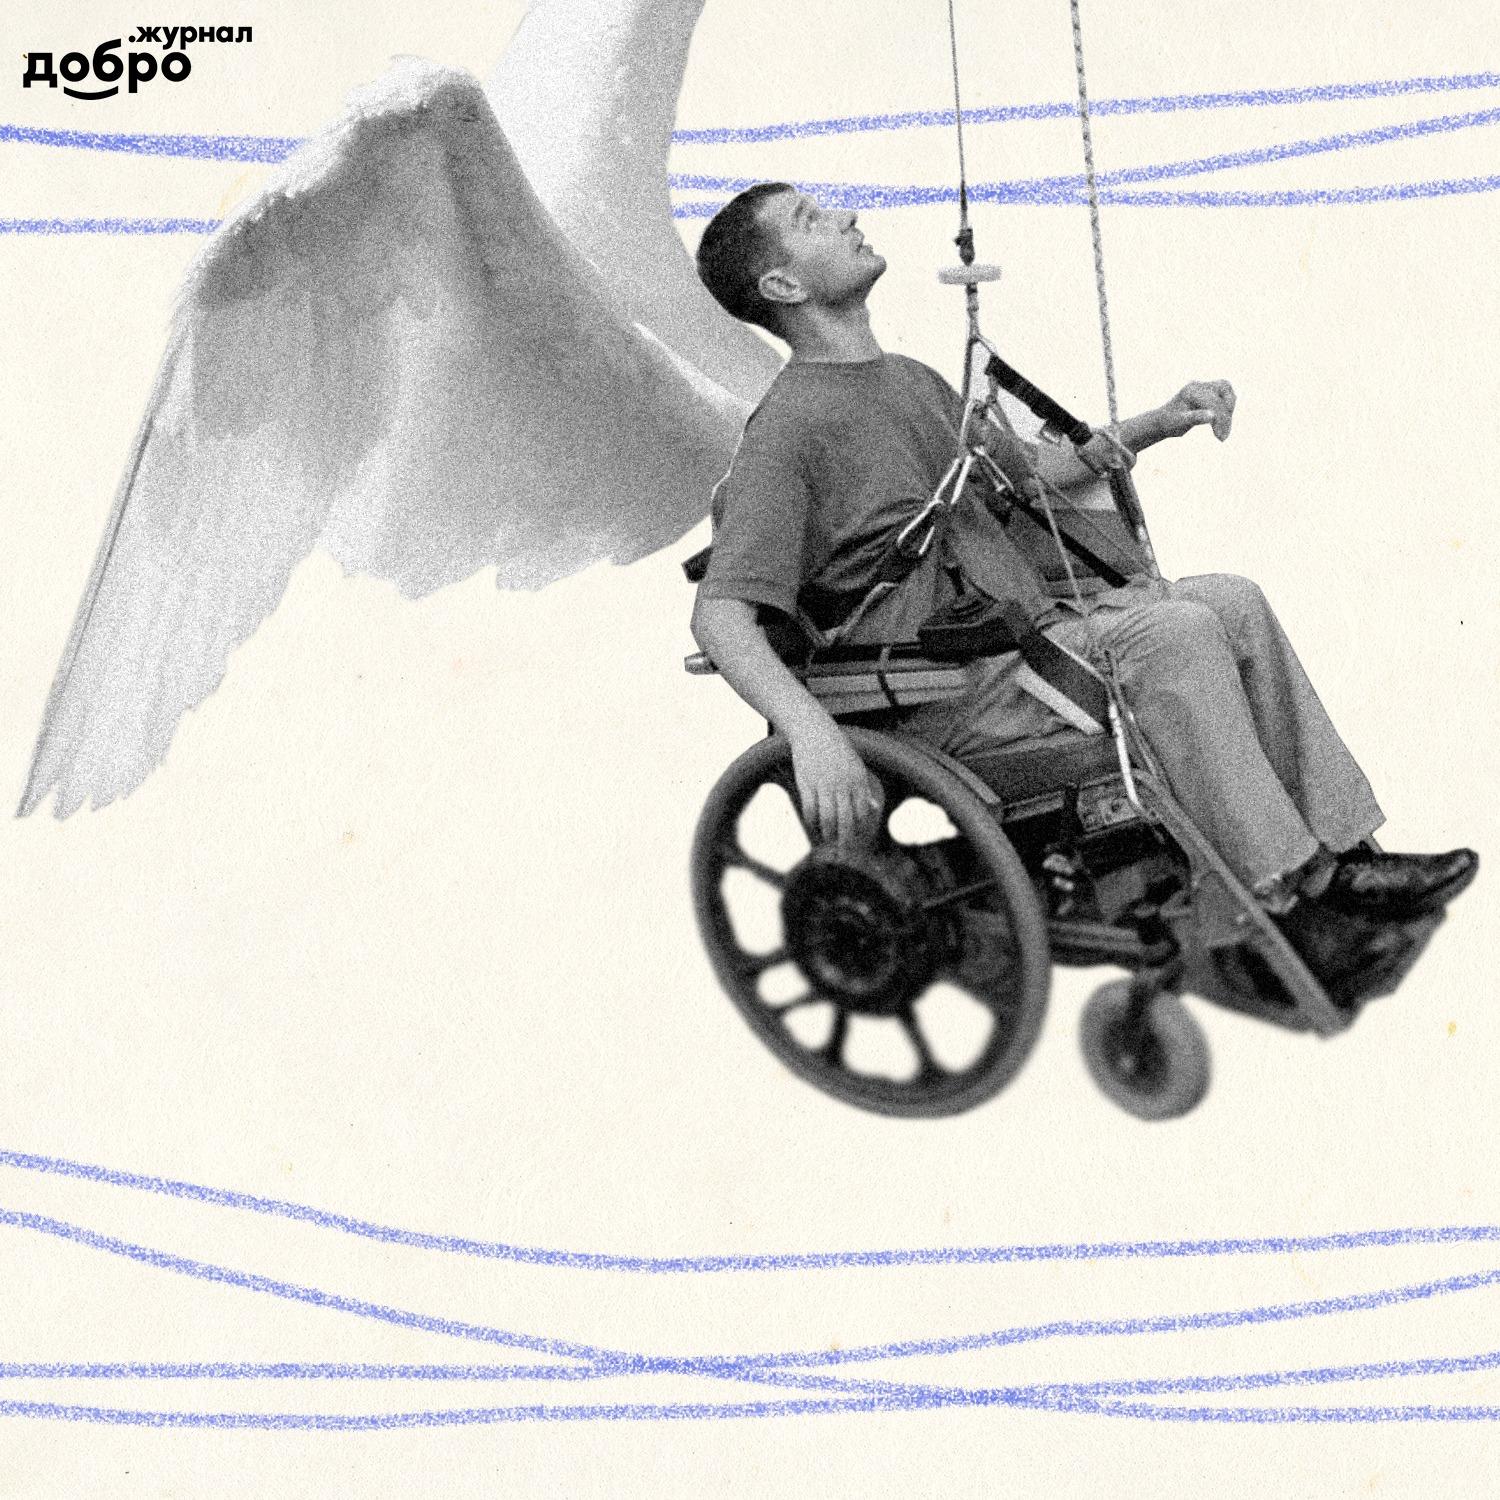 Герой с соседней улицы. История про изобретателя, благодаря которому люди с инвалидностью «летают» по дому на коляске